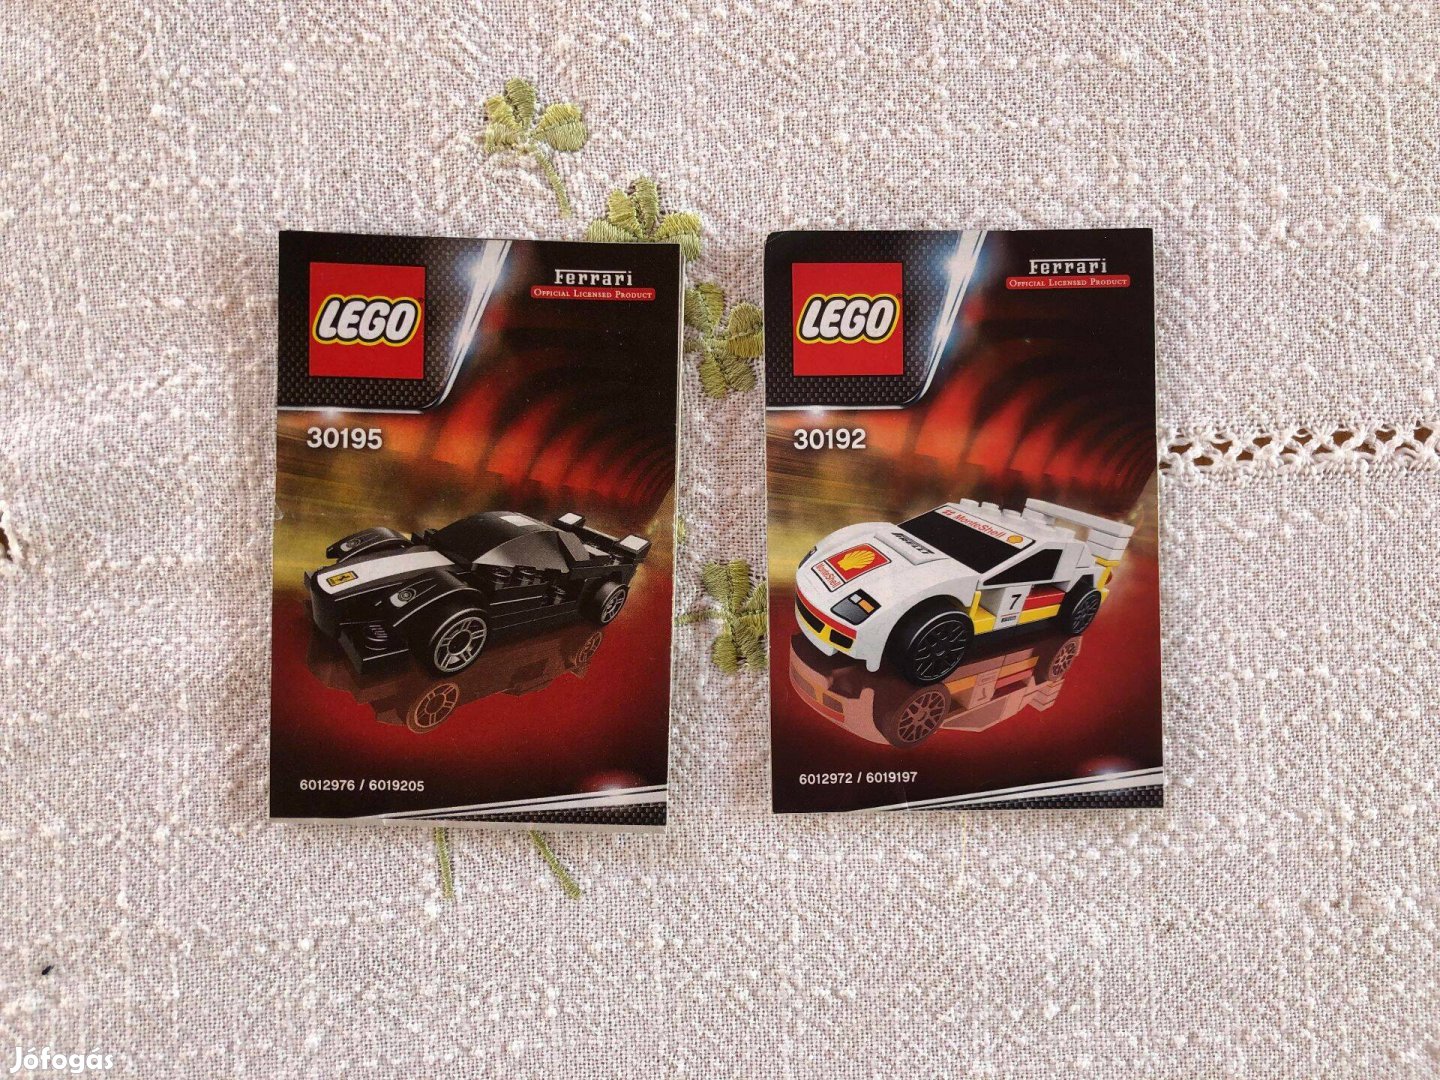 LEGO Ferrari kisautók